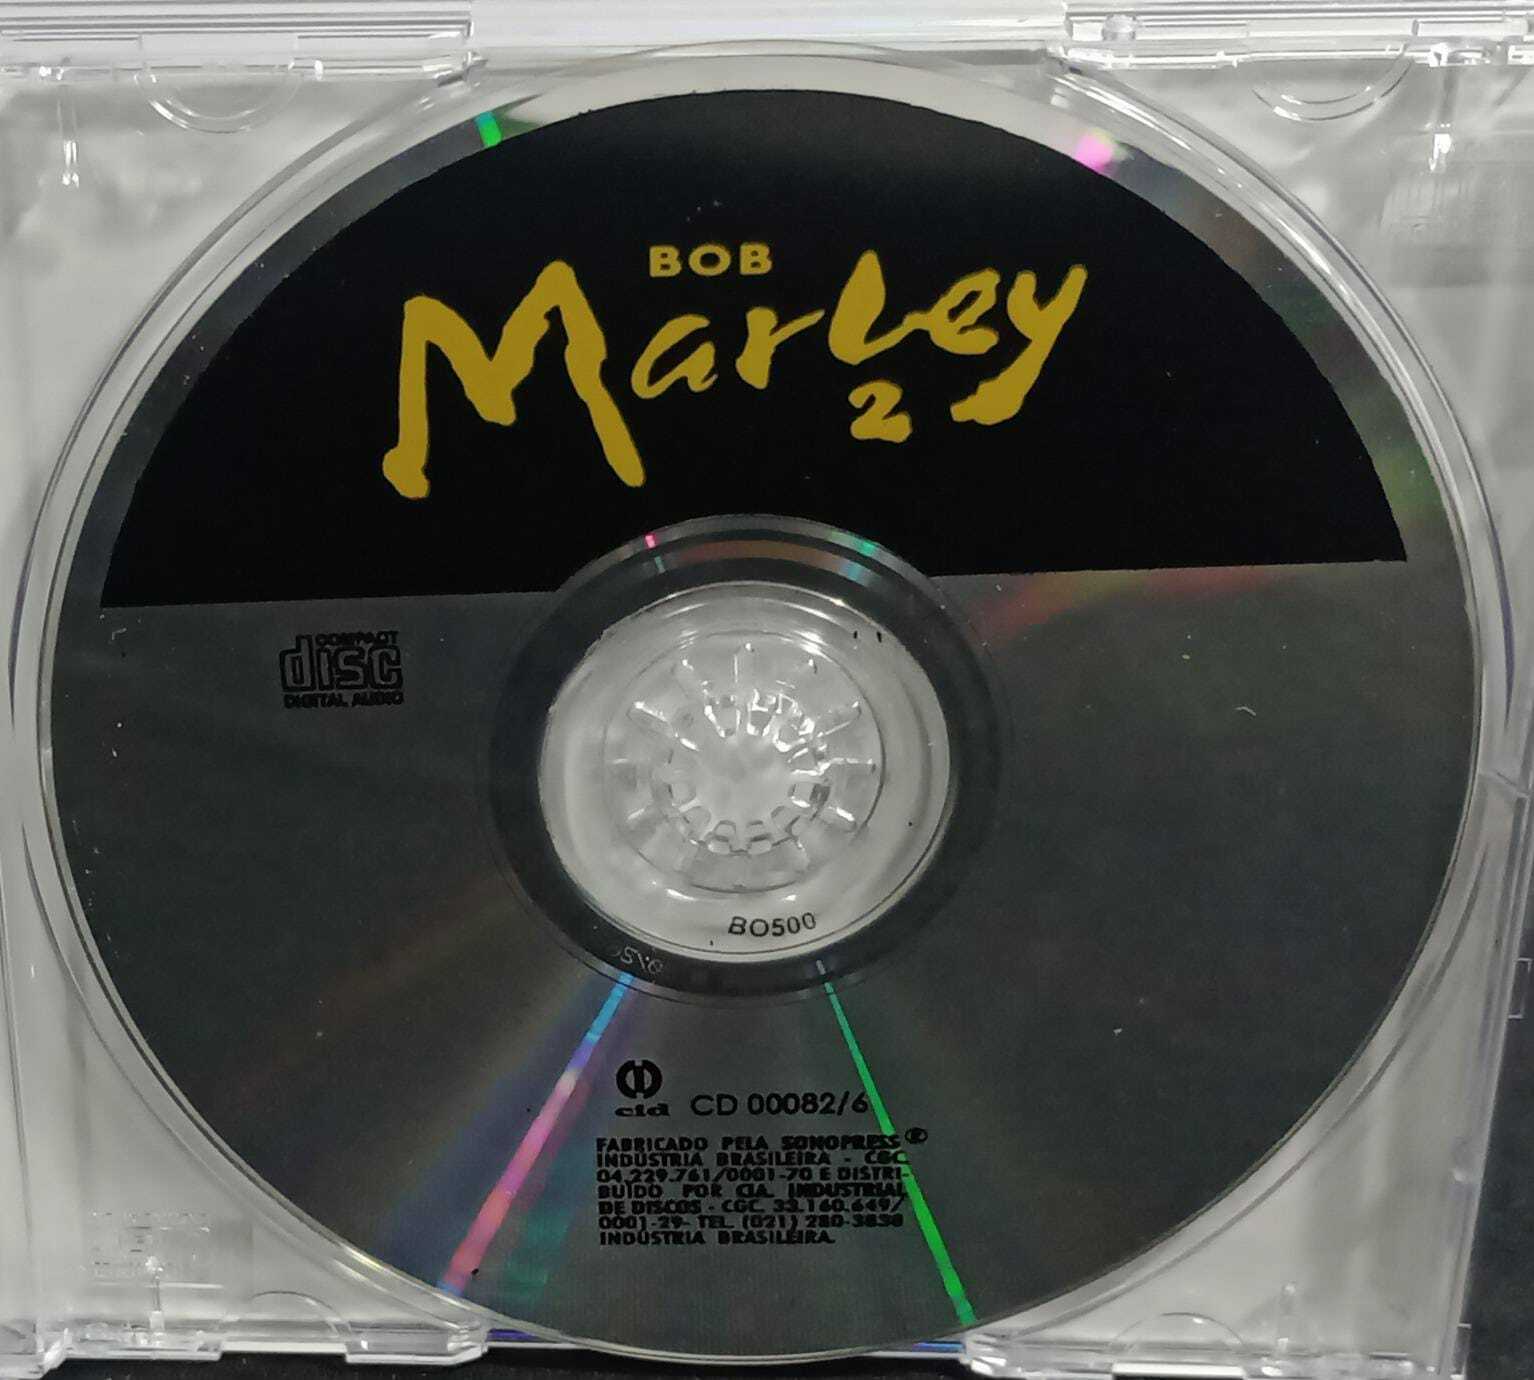 CD - Bob Marley - Marley 2